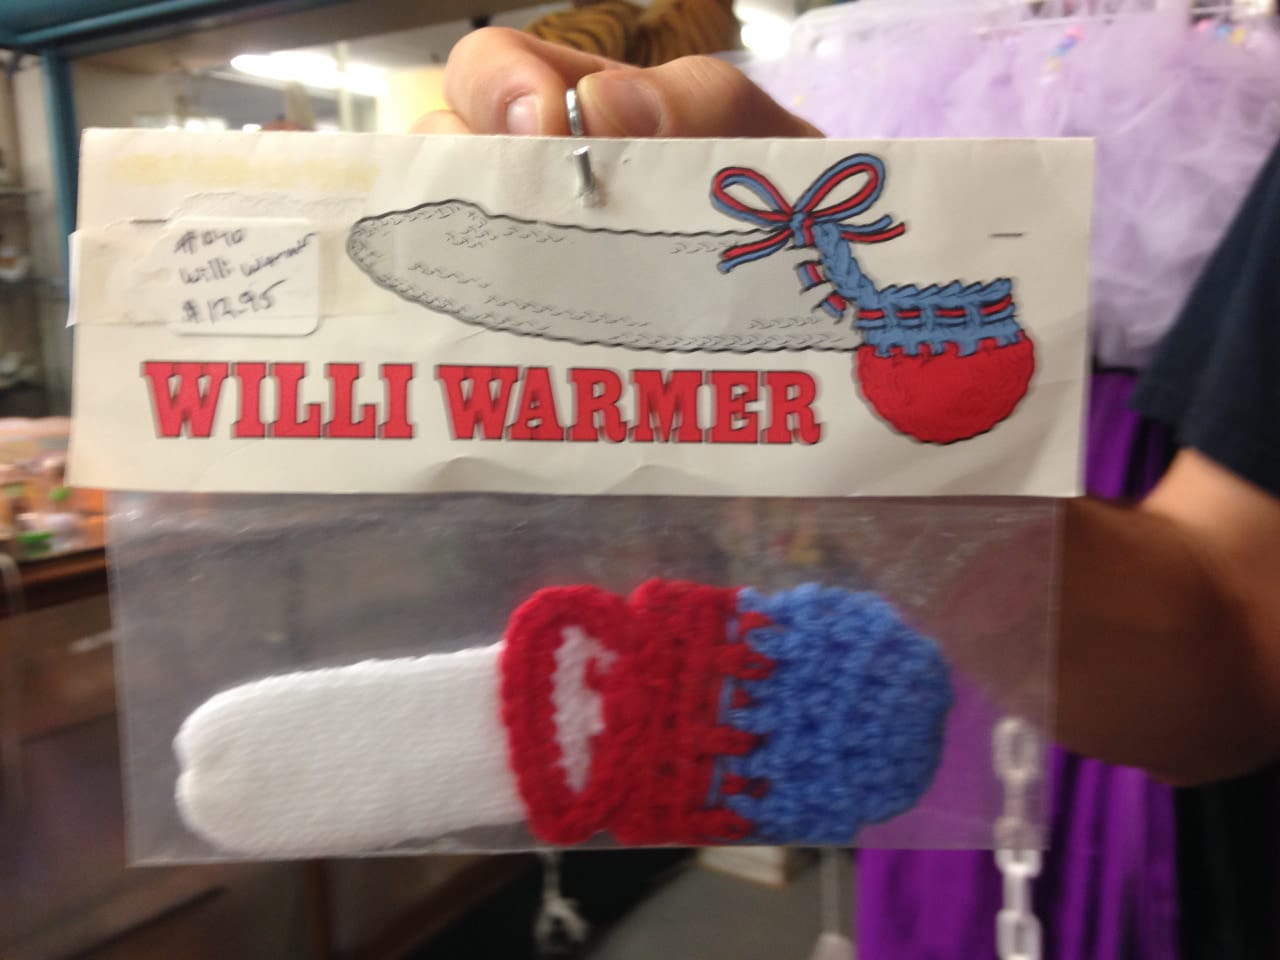 Willi Warmer found at a thrift shop